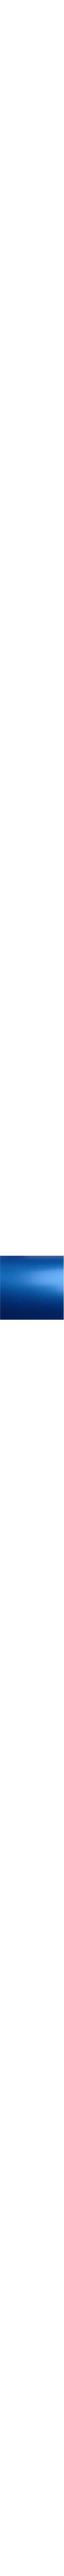 2080-S347 PERFECT BLUE en 1.524m